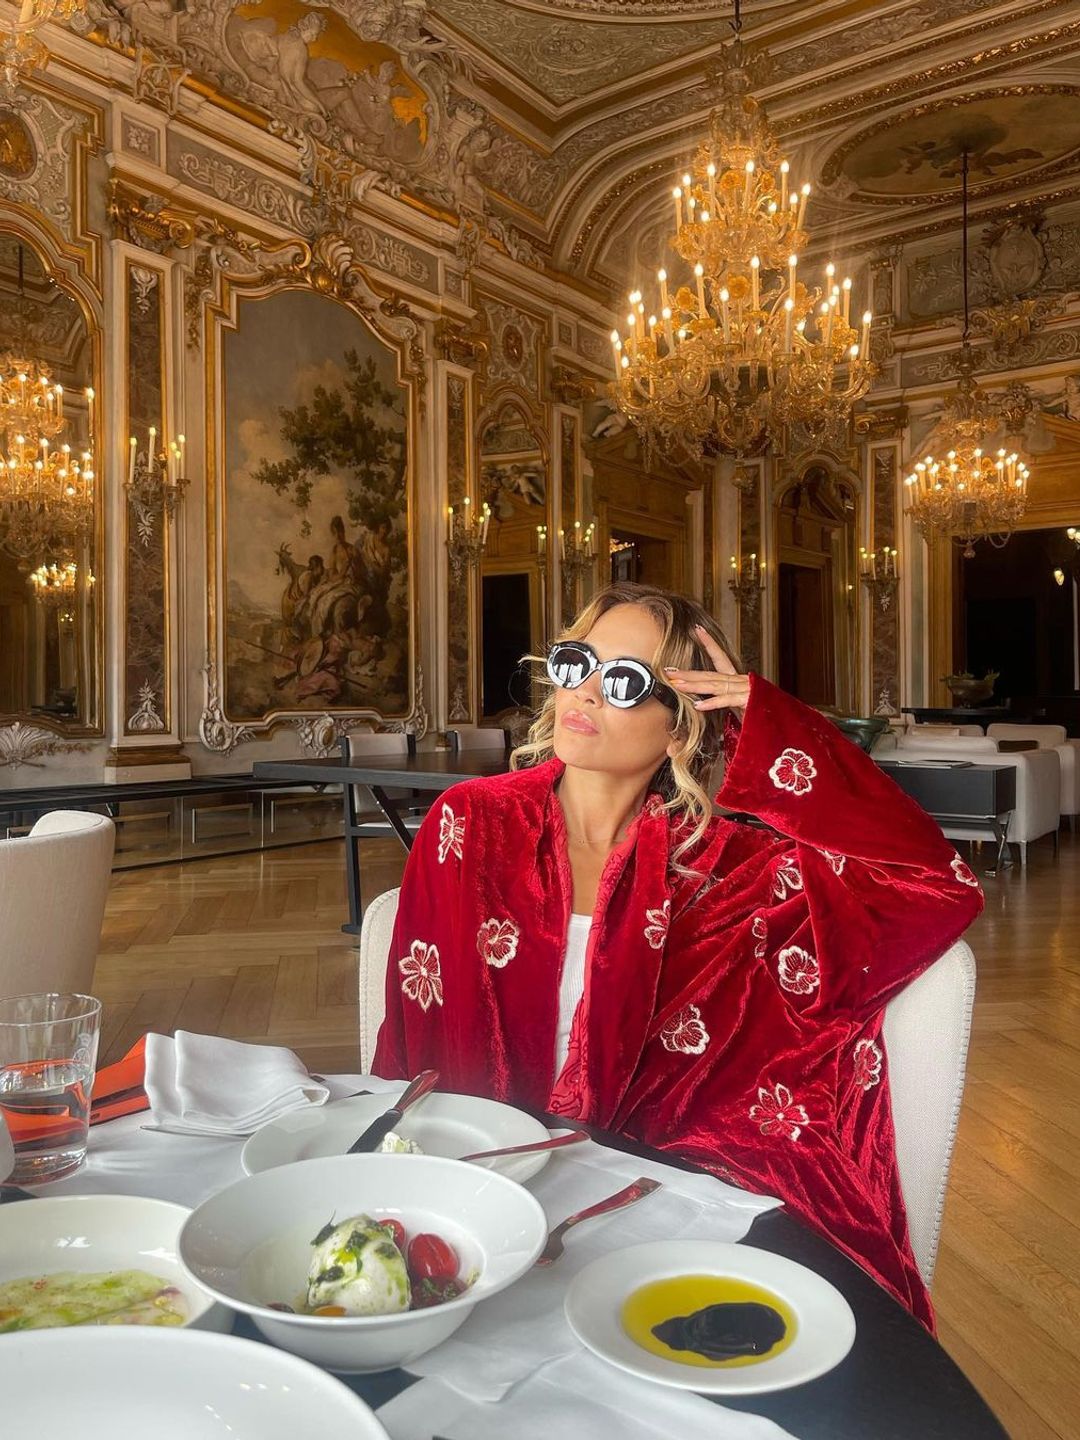 Rita Ora wearing a sumptuous red robe 